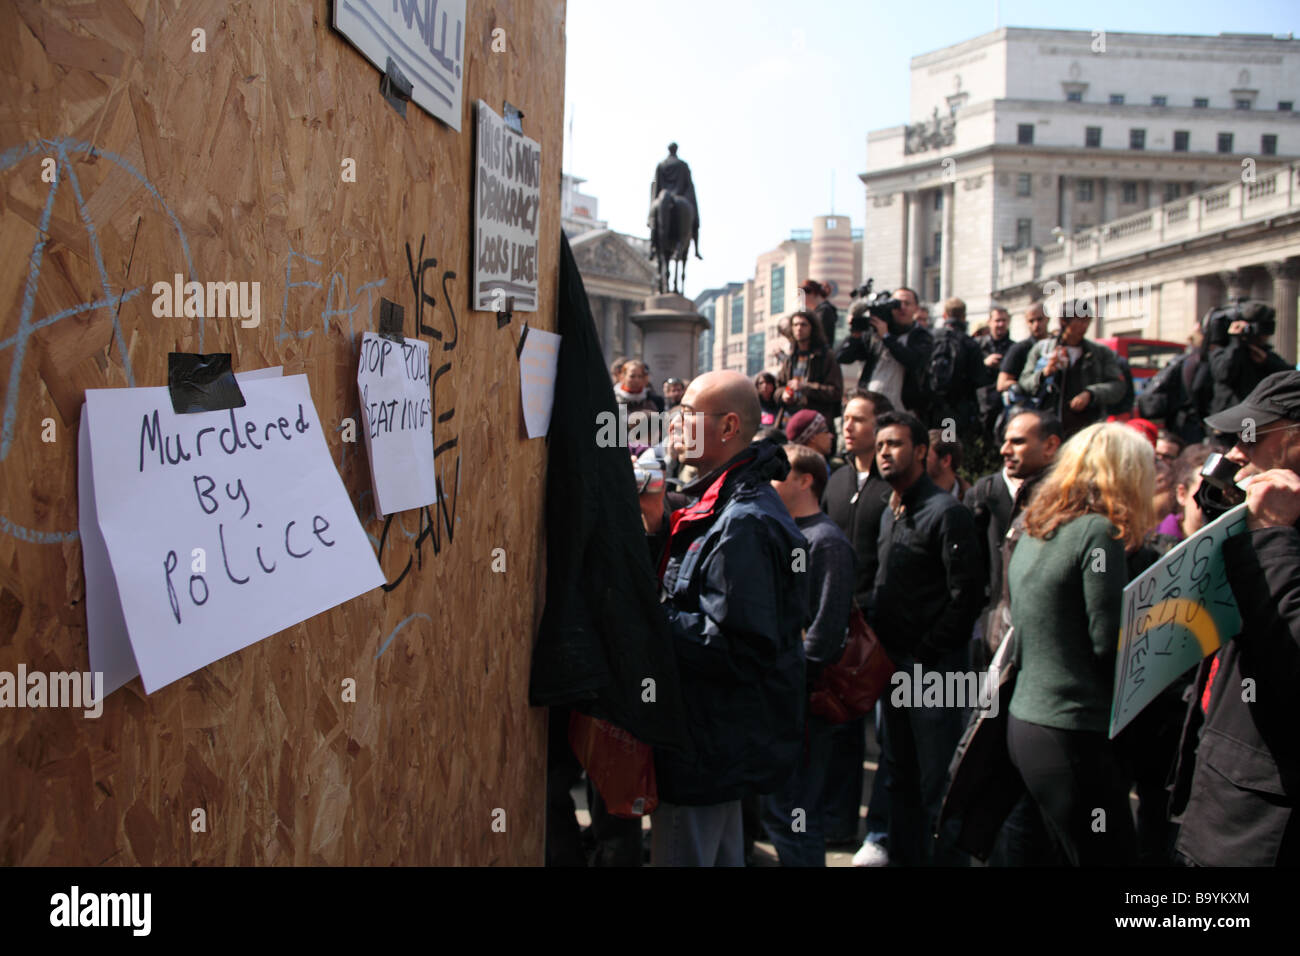 Les messages de protestation publiée sur un bord à l'extérieur de la Banque d'Angleterre au cours de la 2009 Sommet du G20, Londres, Royaume-Uni. Banque D'Images